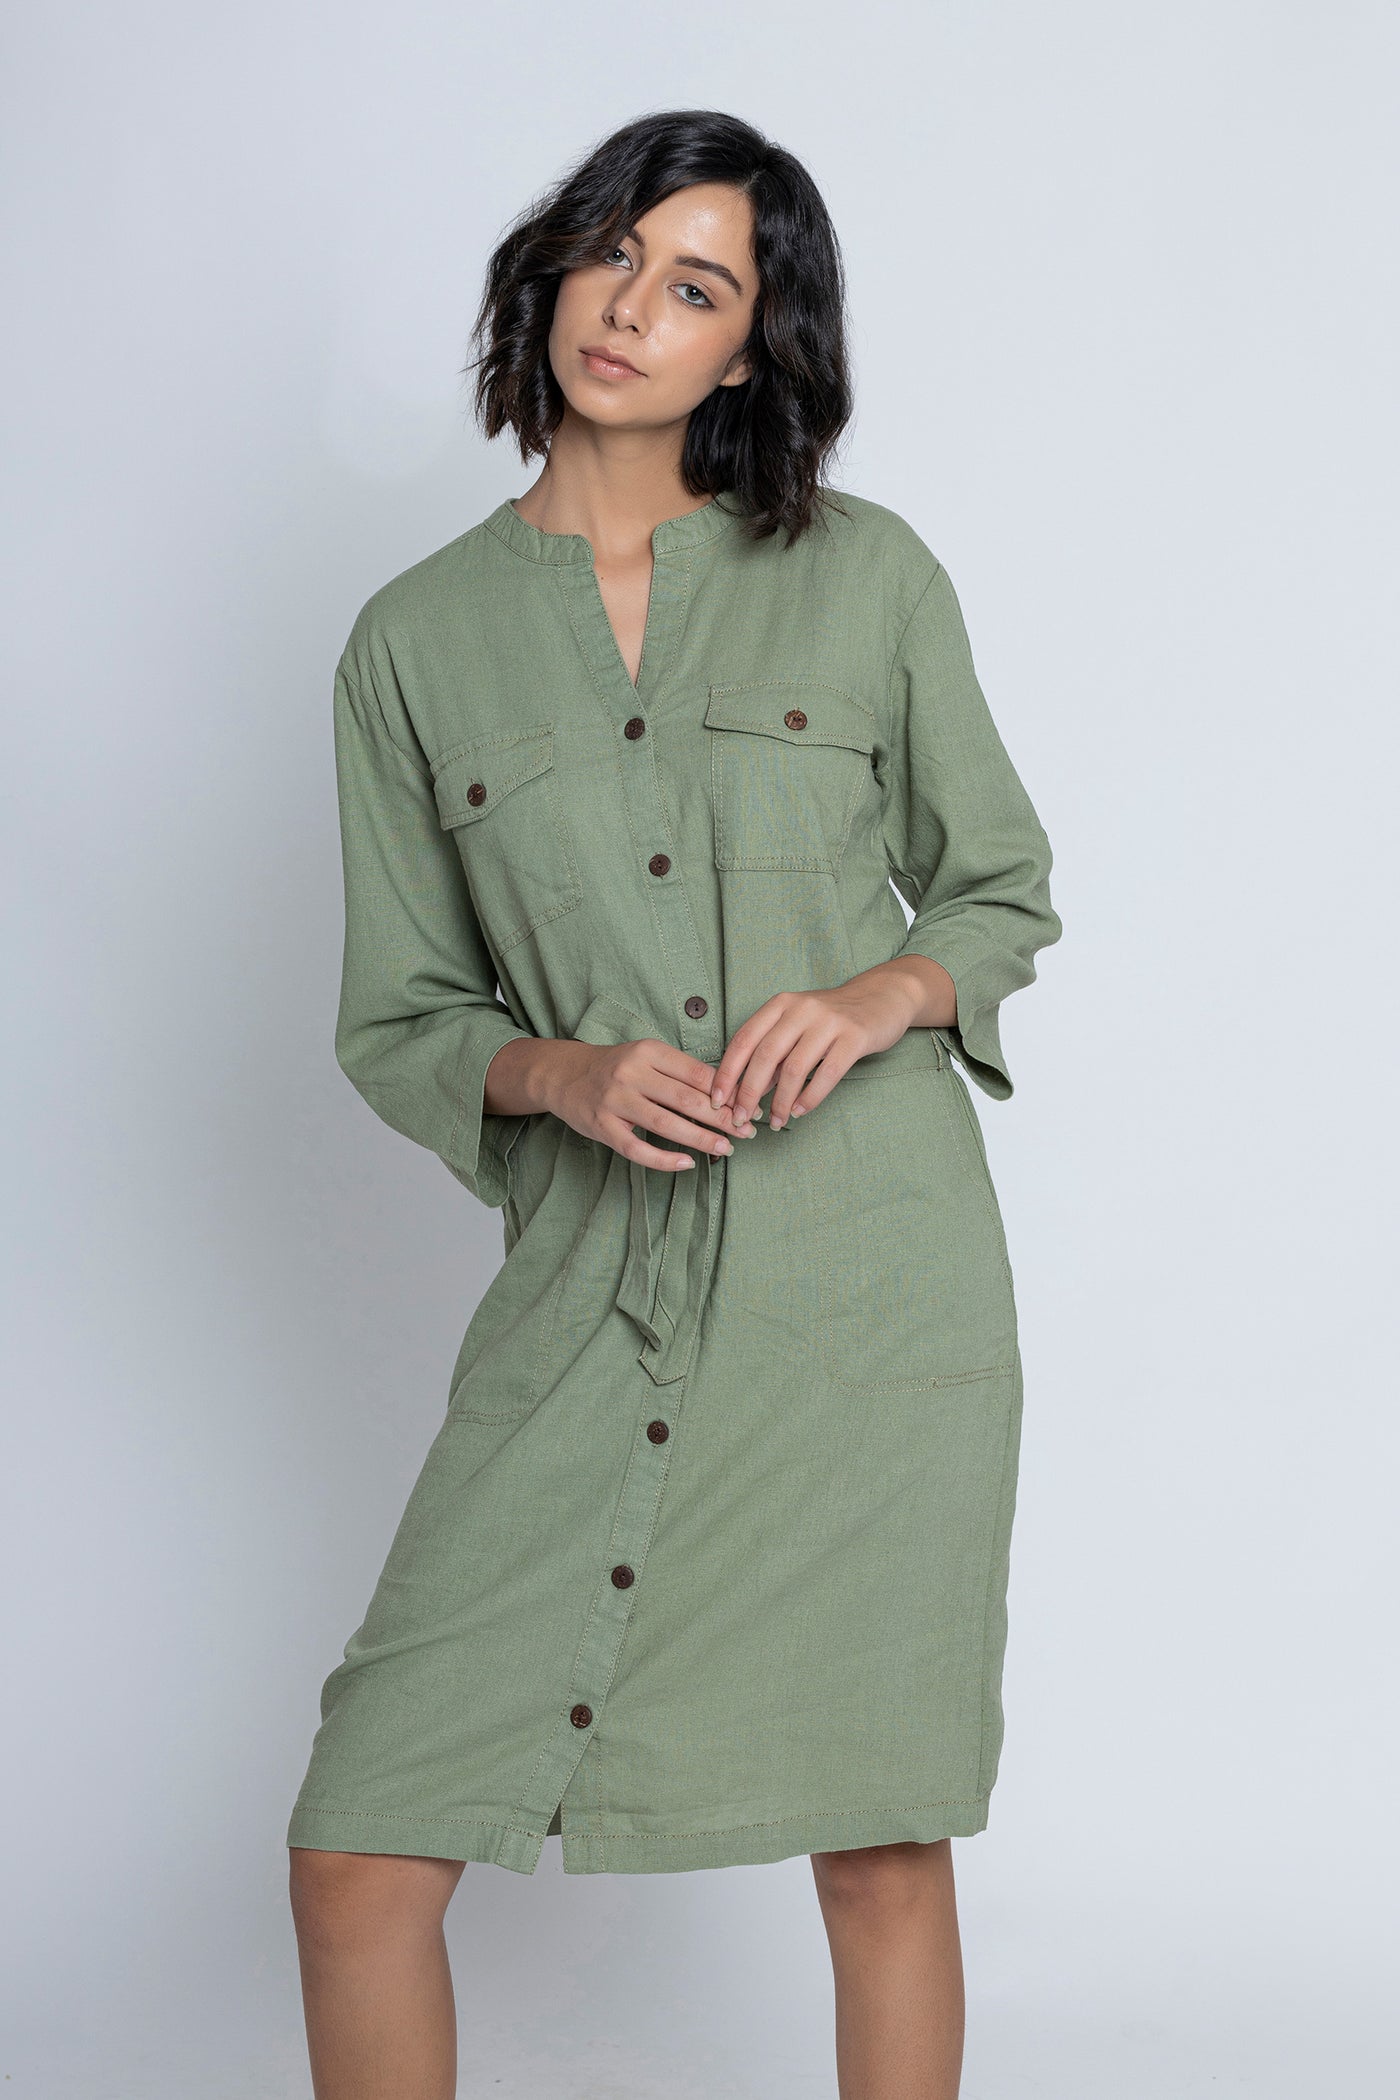 Olive Green Safari Dress